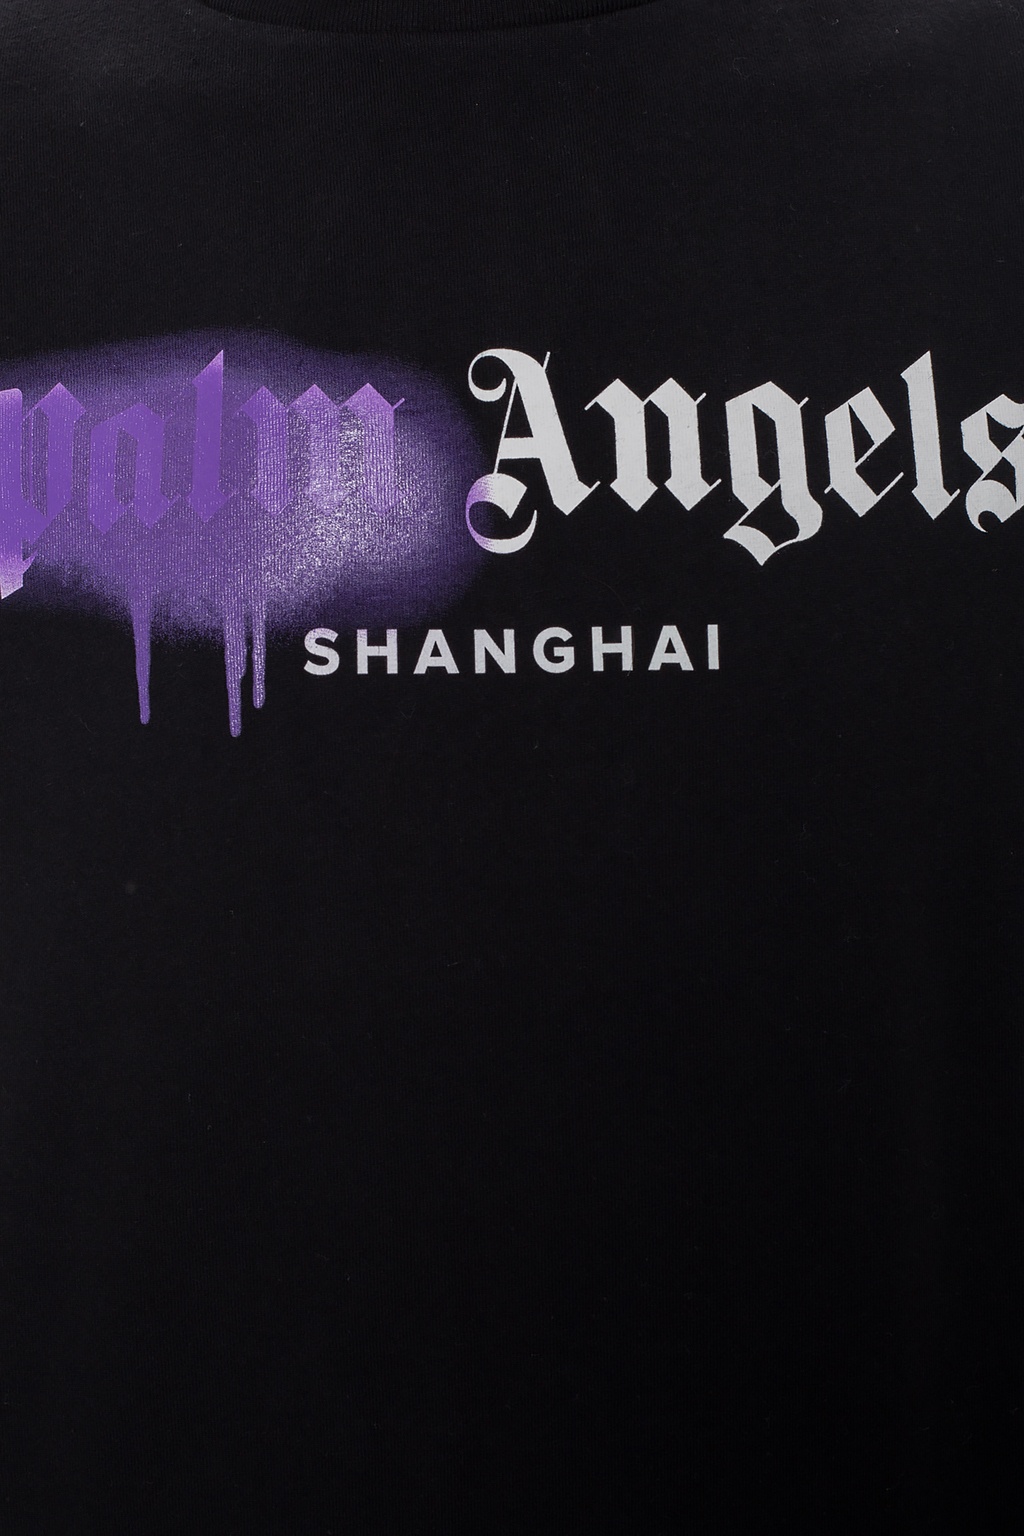 palm angels shanghai t shirt black